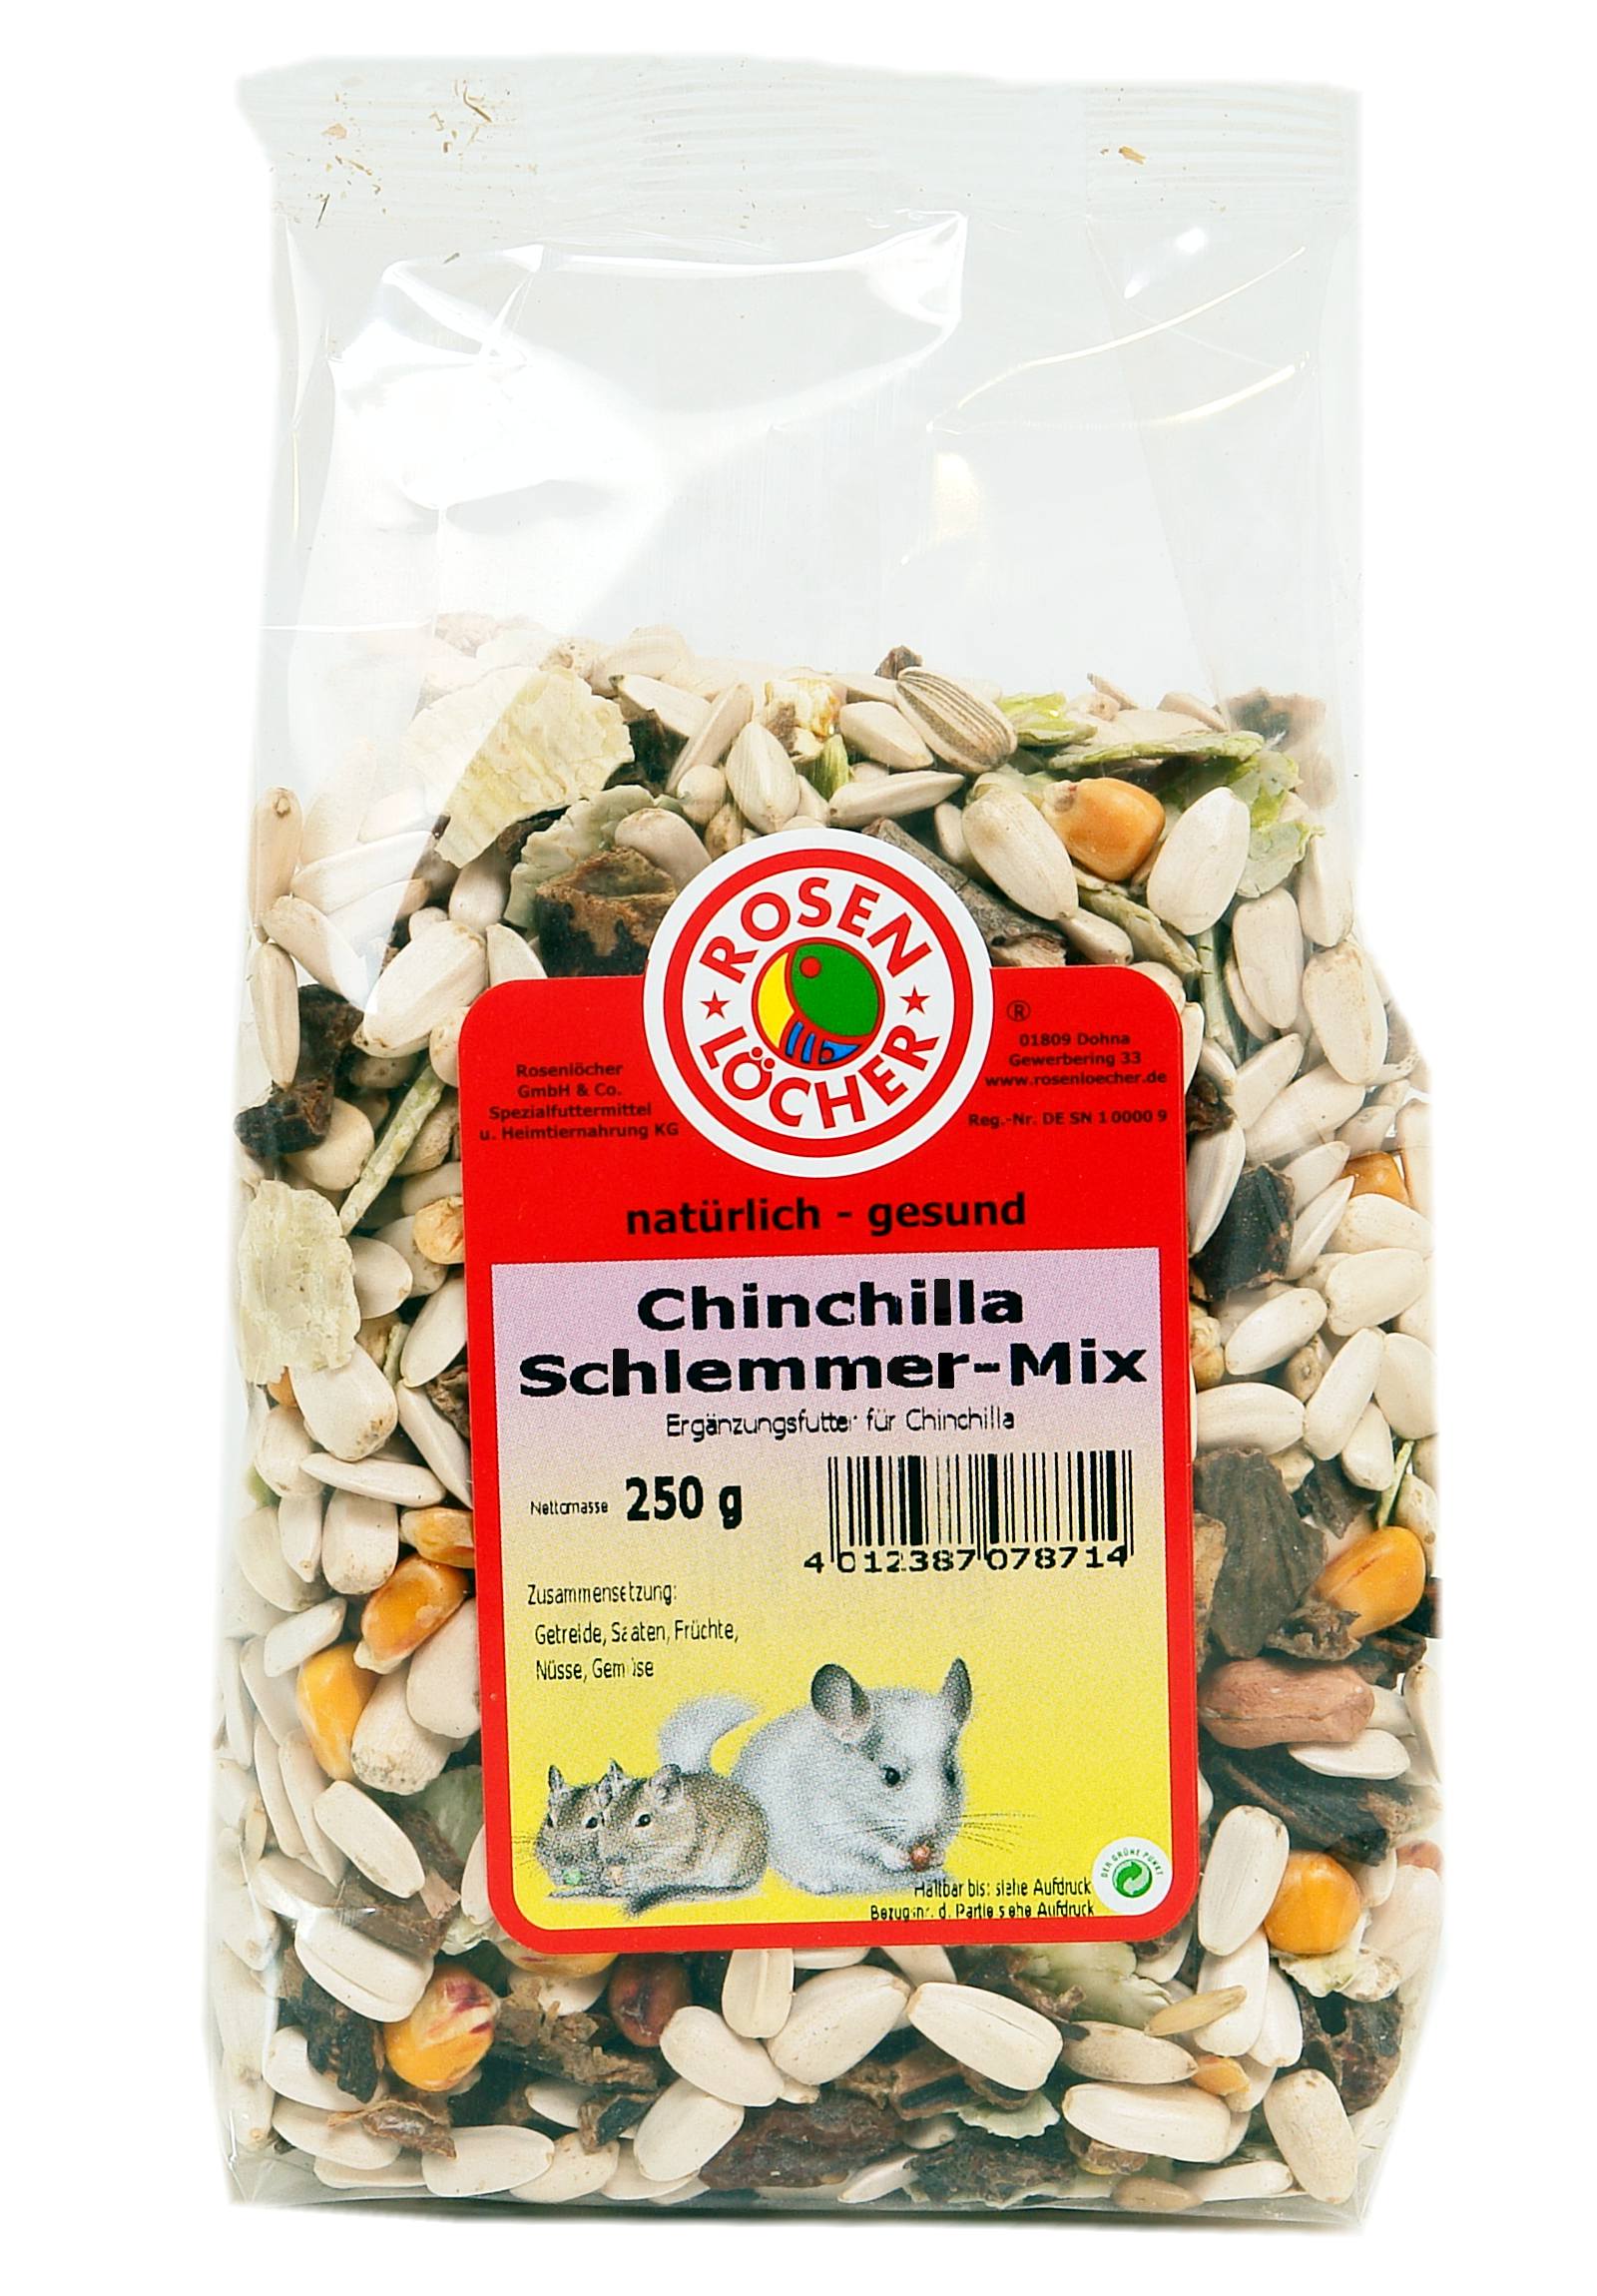 ROSENLÖCHER - Chinchilla Schlemmermix 250g Alleinfutter